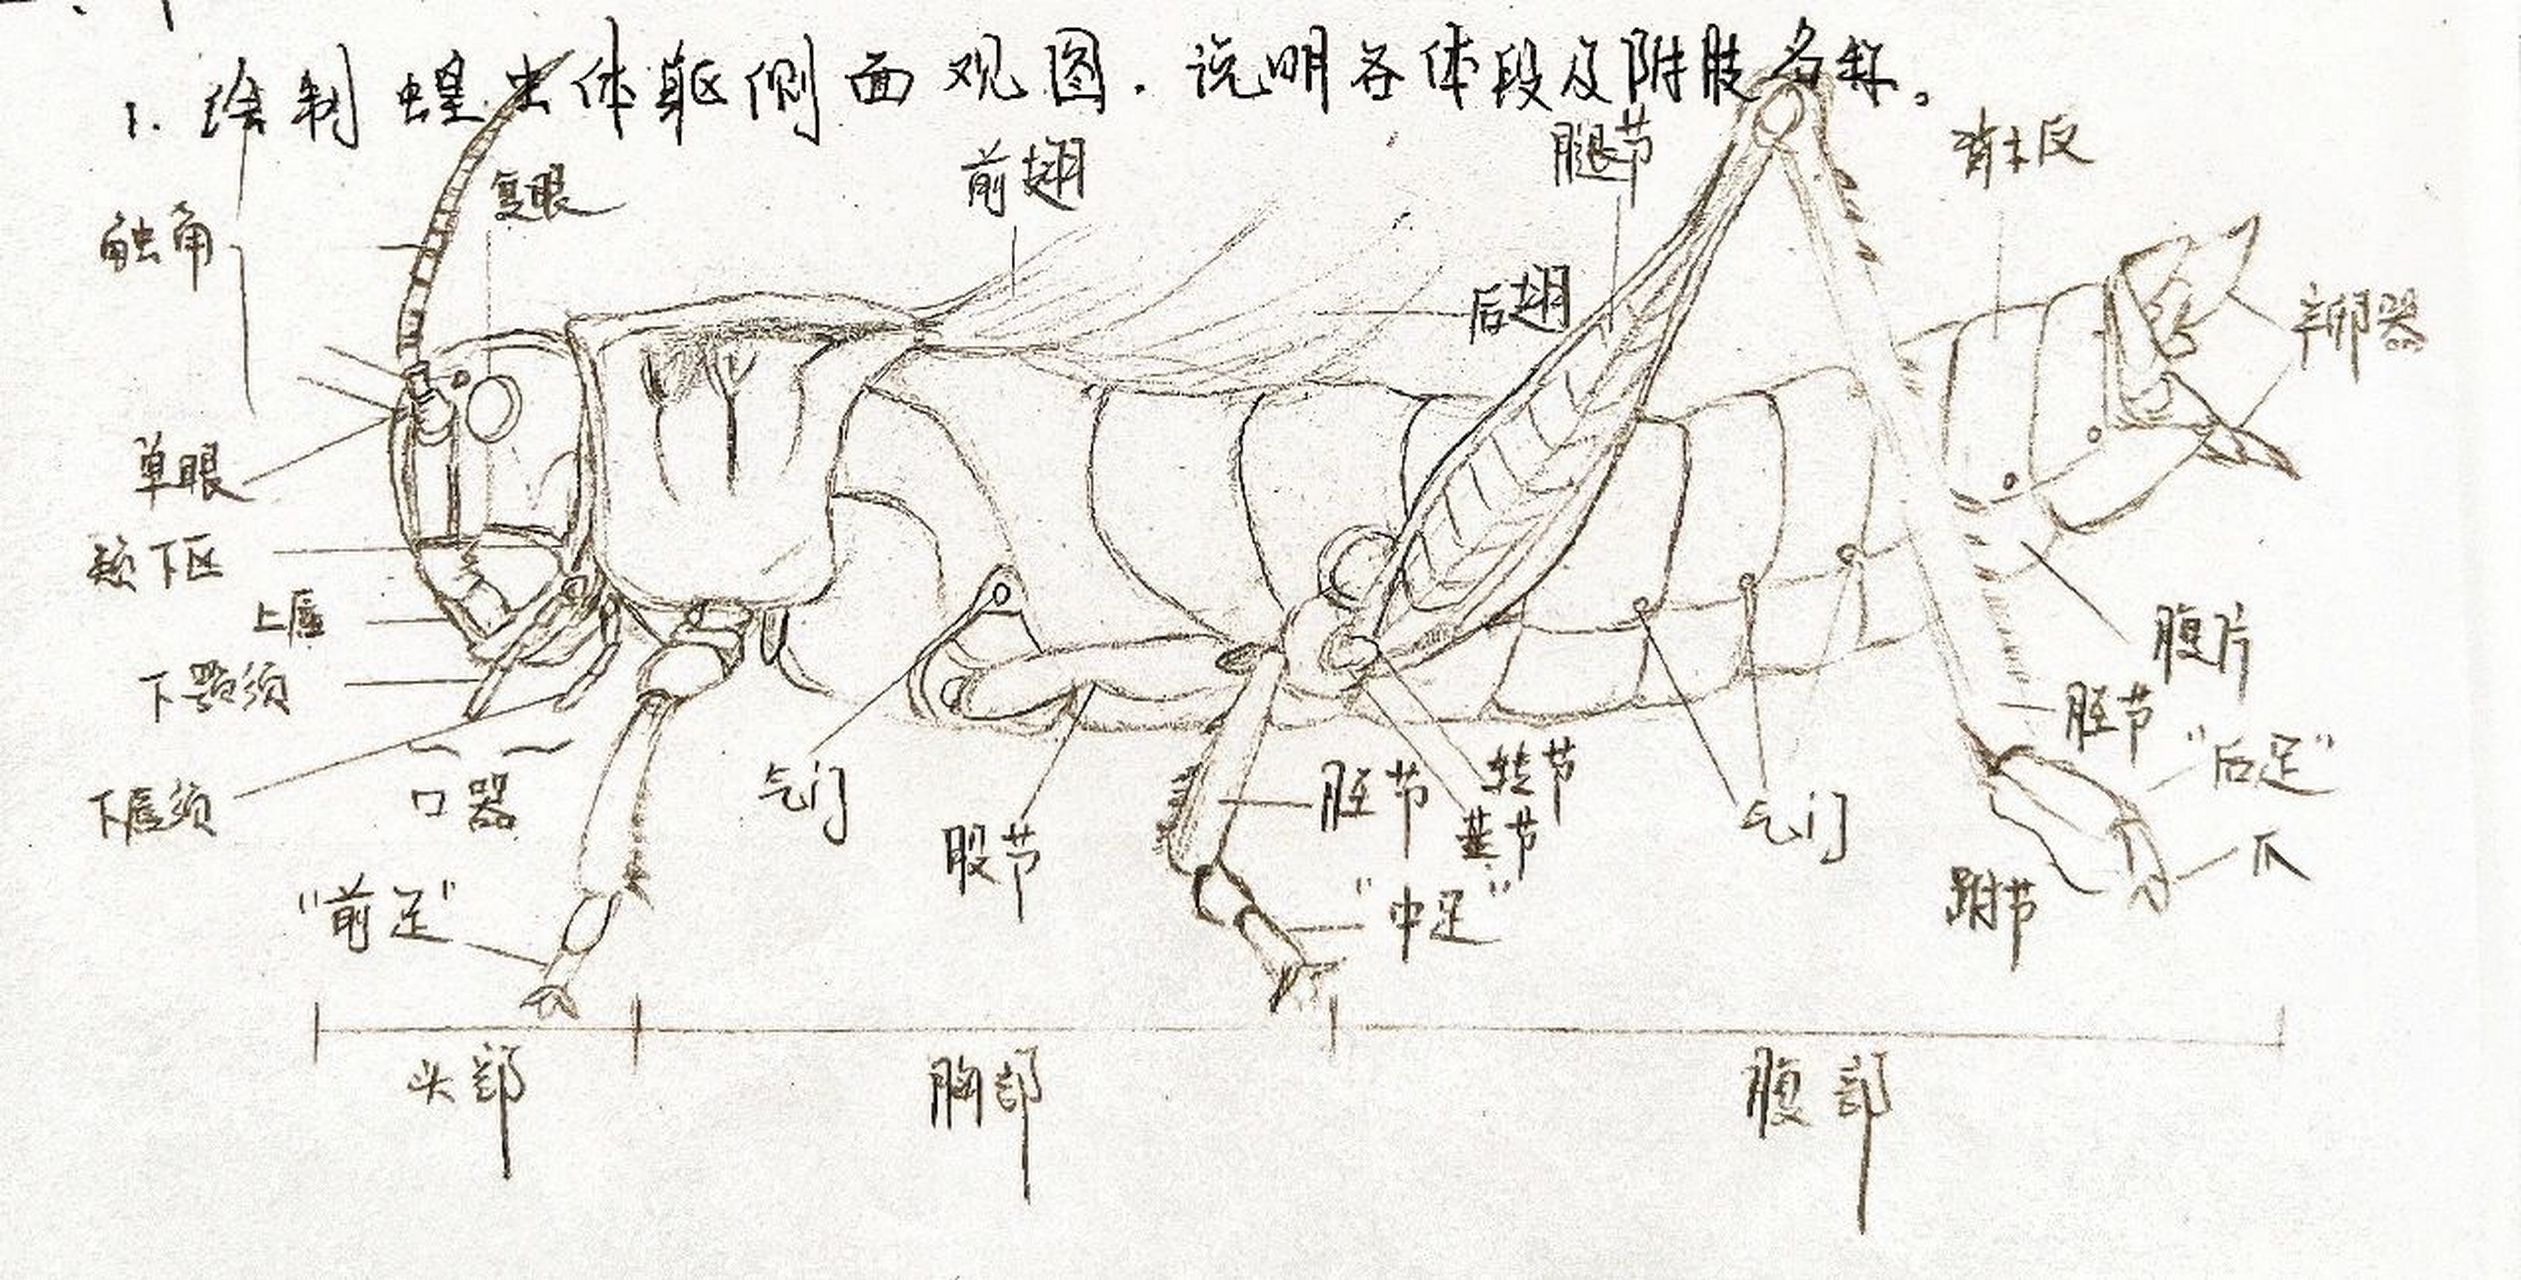 蝗虫结构图手绘图片